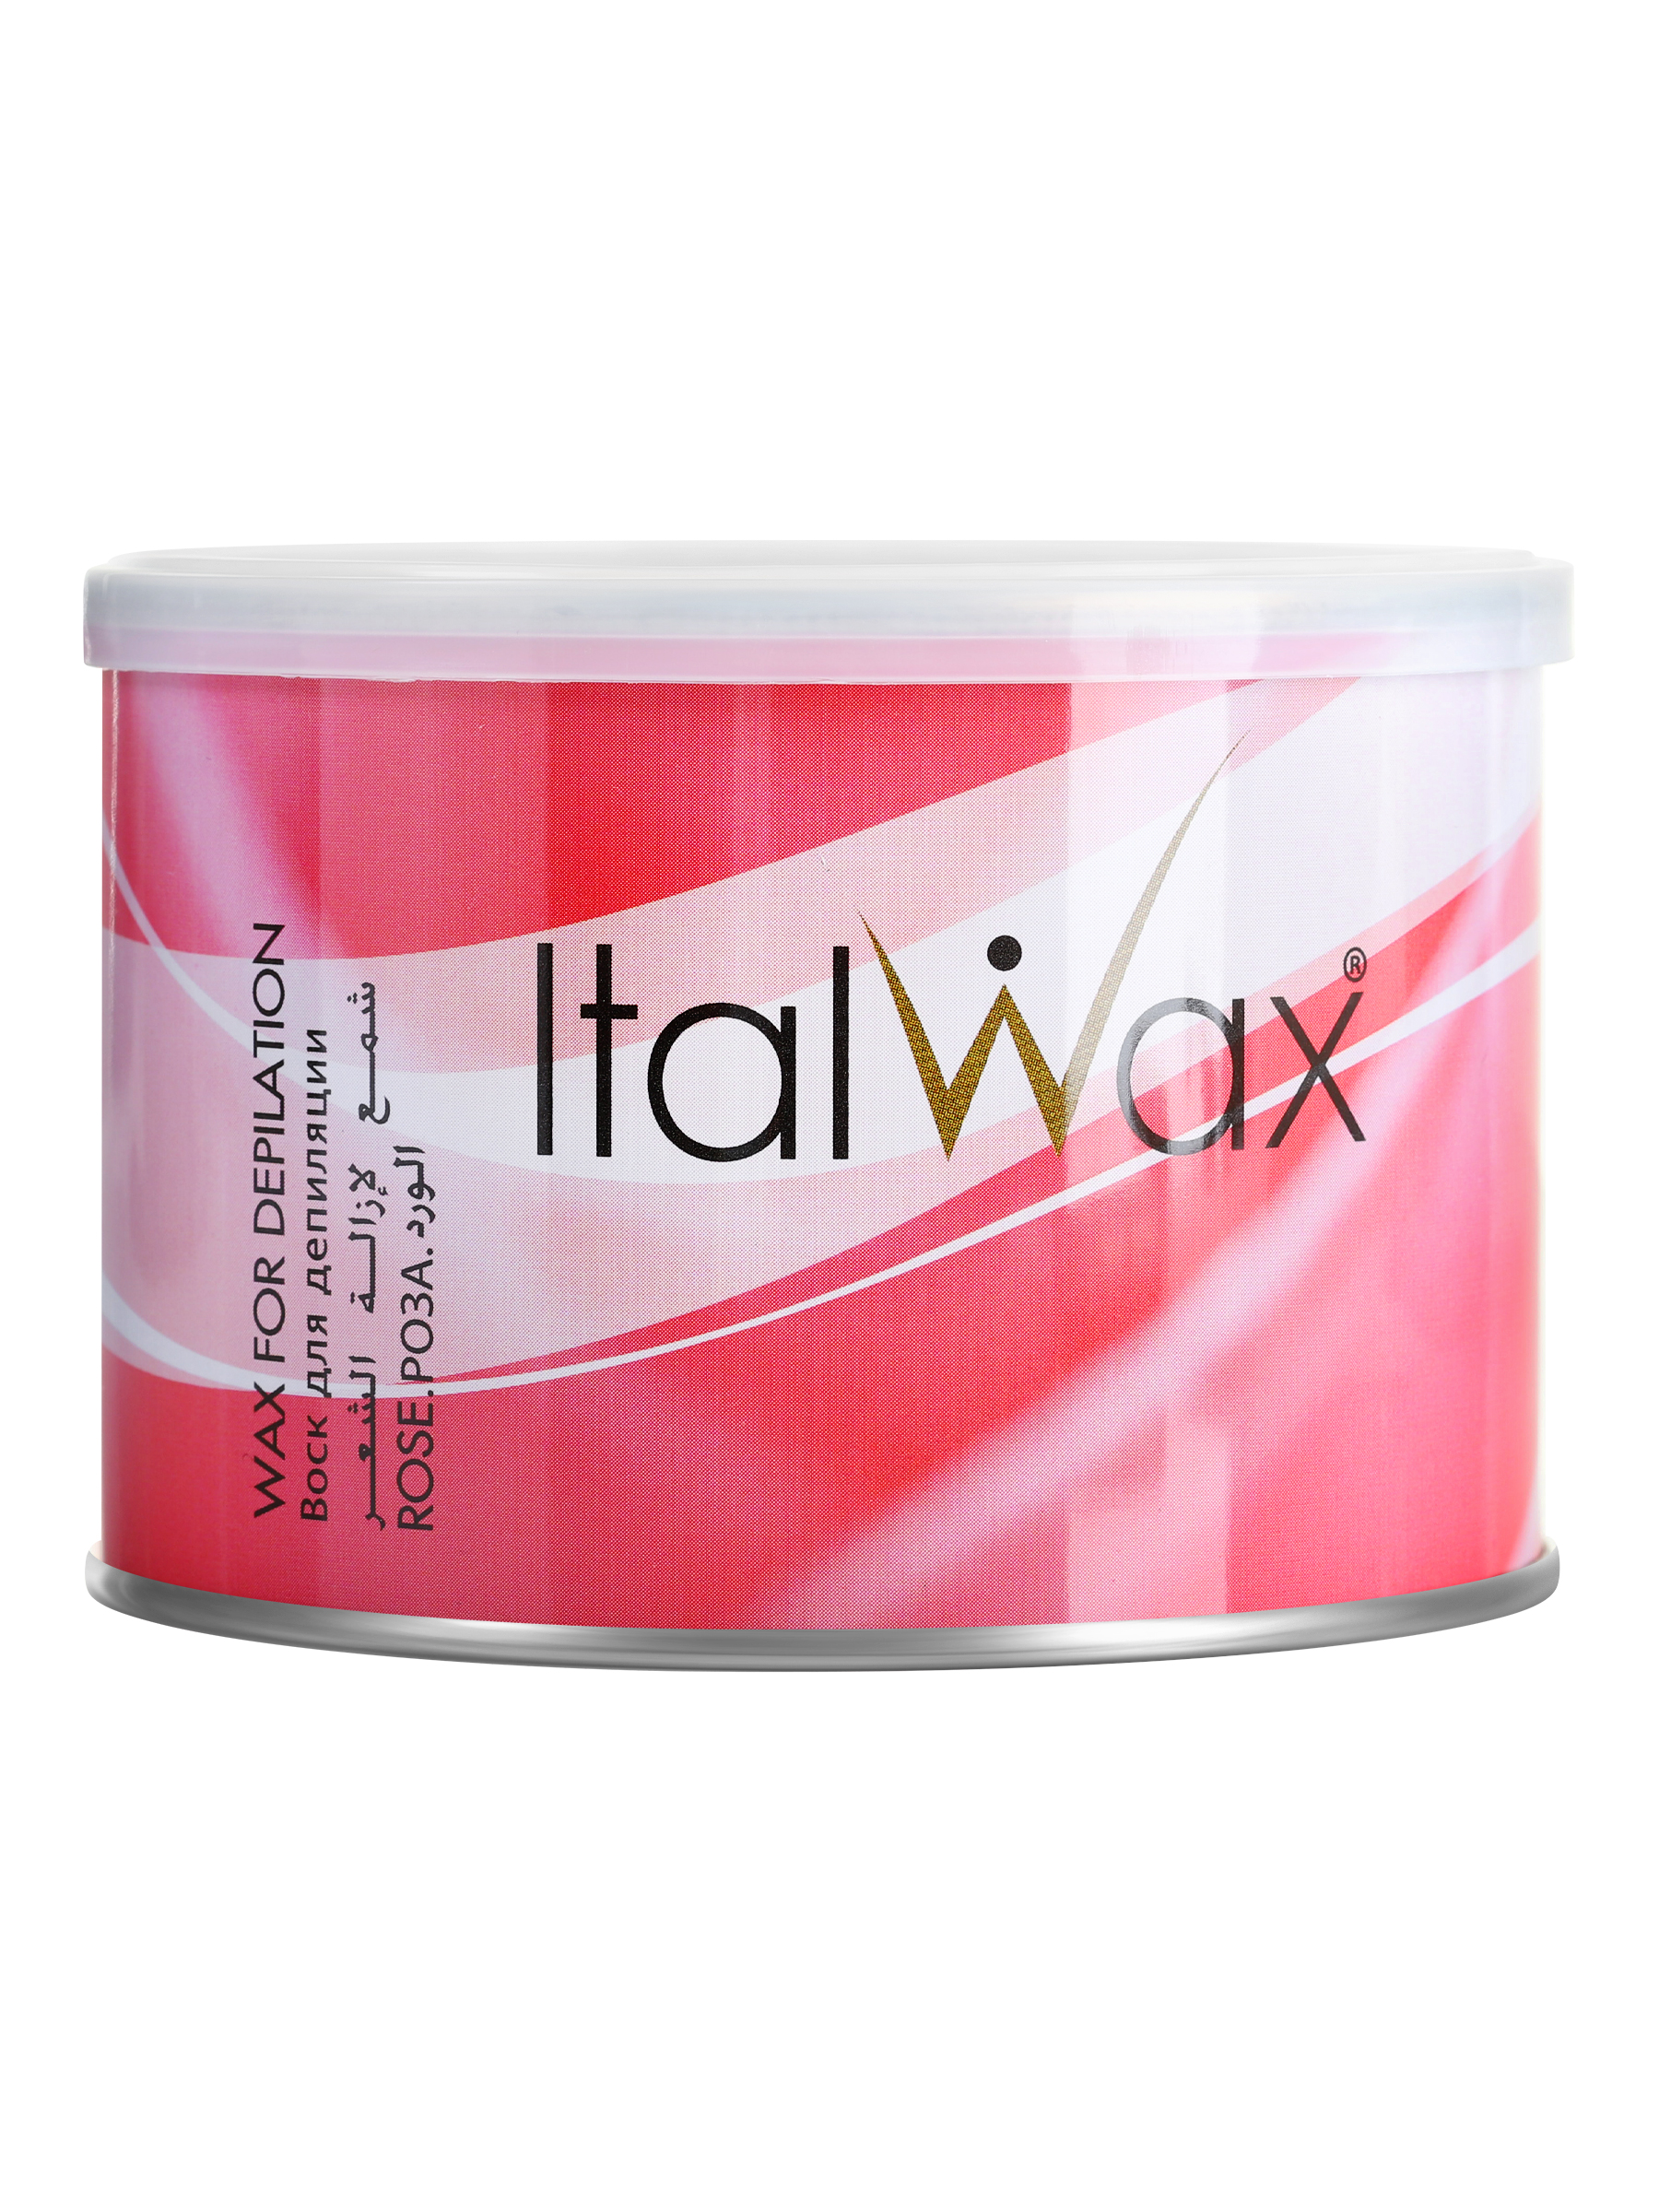 Воск для депиляции Italwax жидкий, теплый, в банке, удаление волос для ног, Роза, 400 мл лосьон для тела до депиляции italwax спрей очищающий перед удалением волос алоэ 100 мл